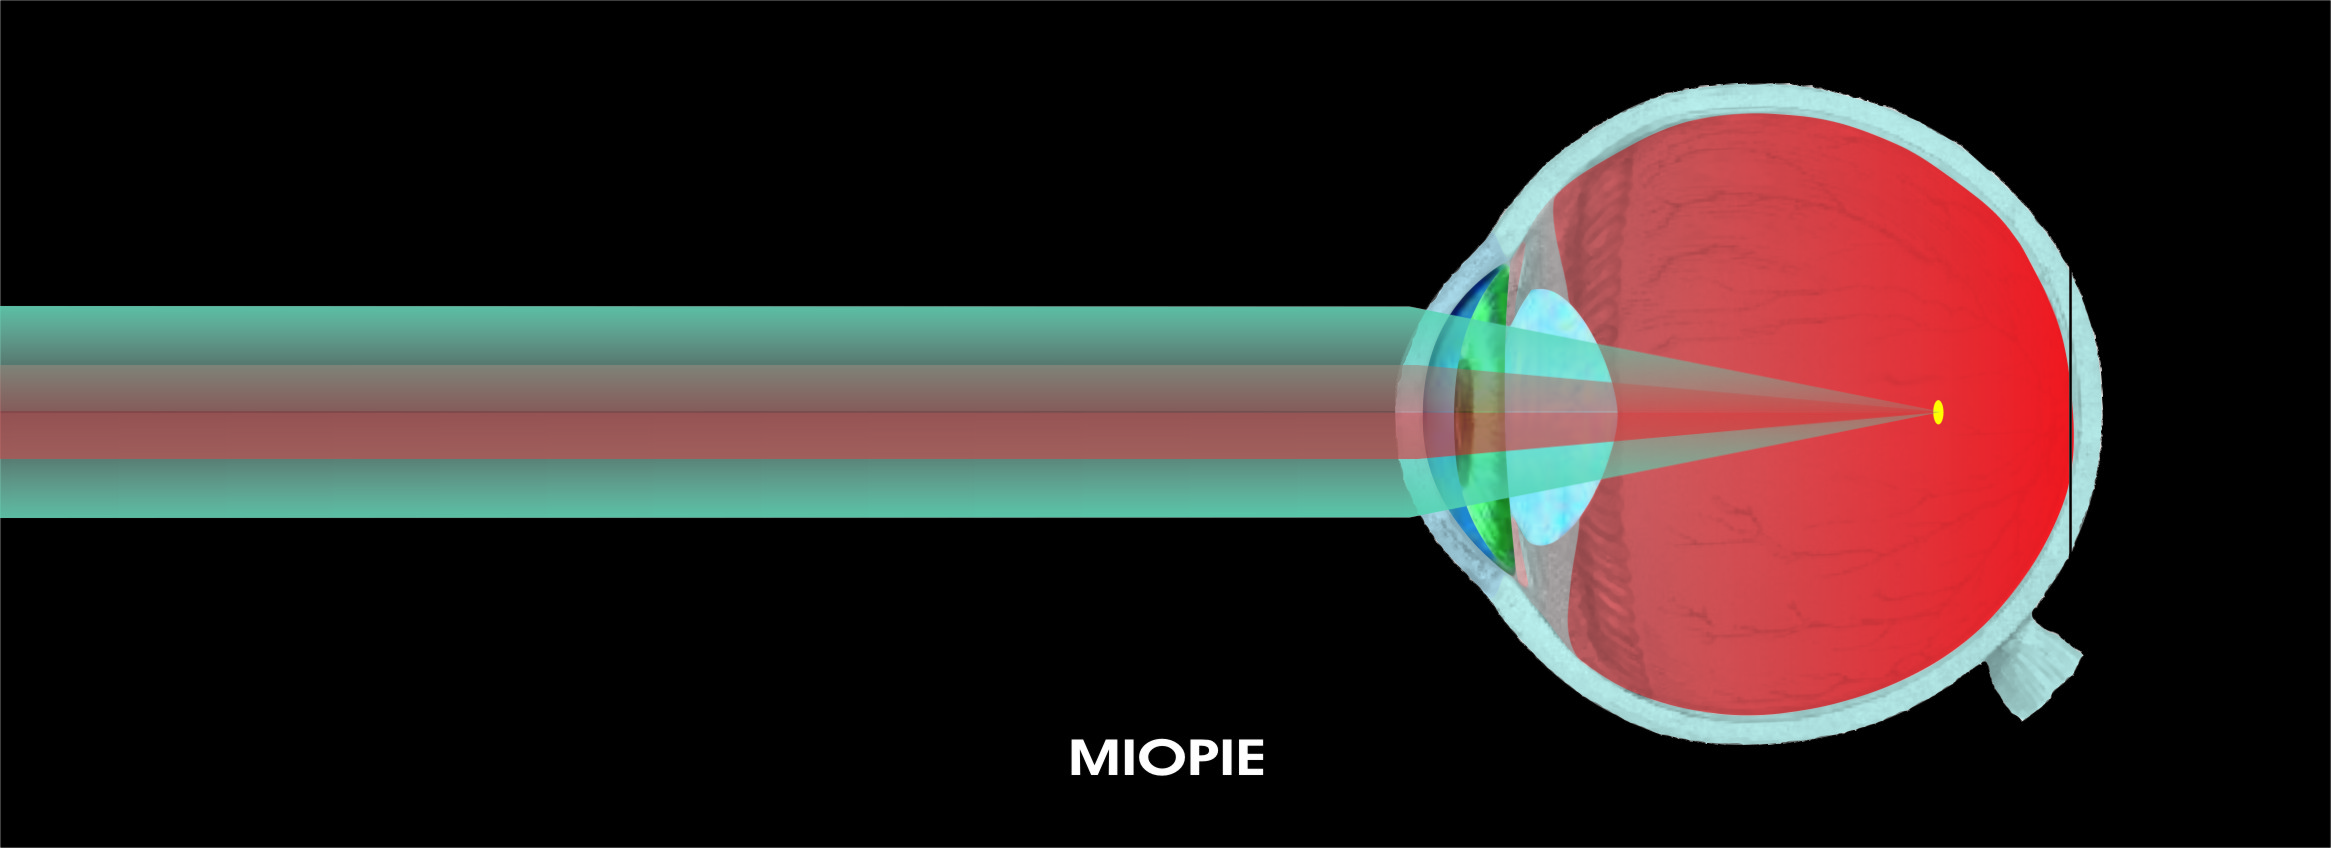 cum se poate măsura miopia